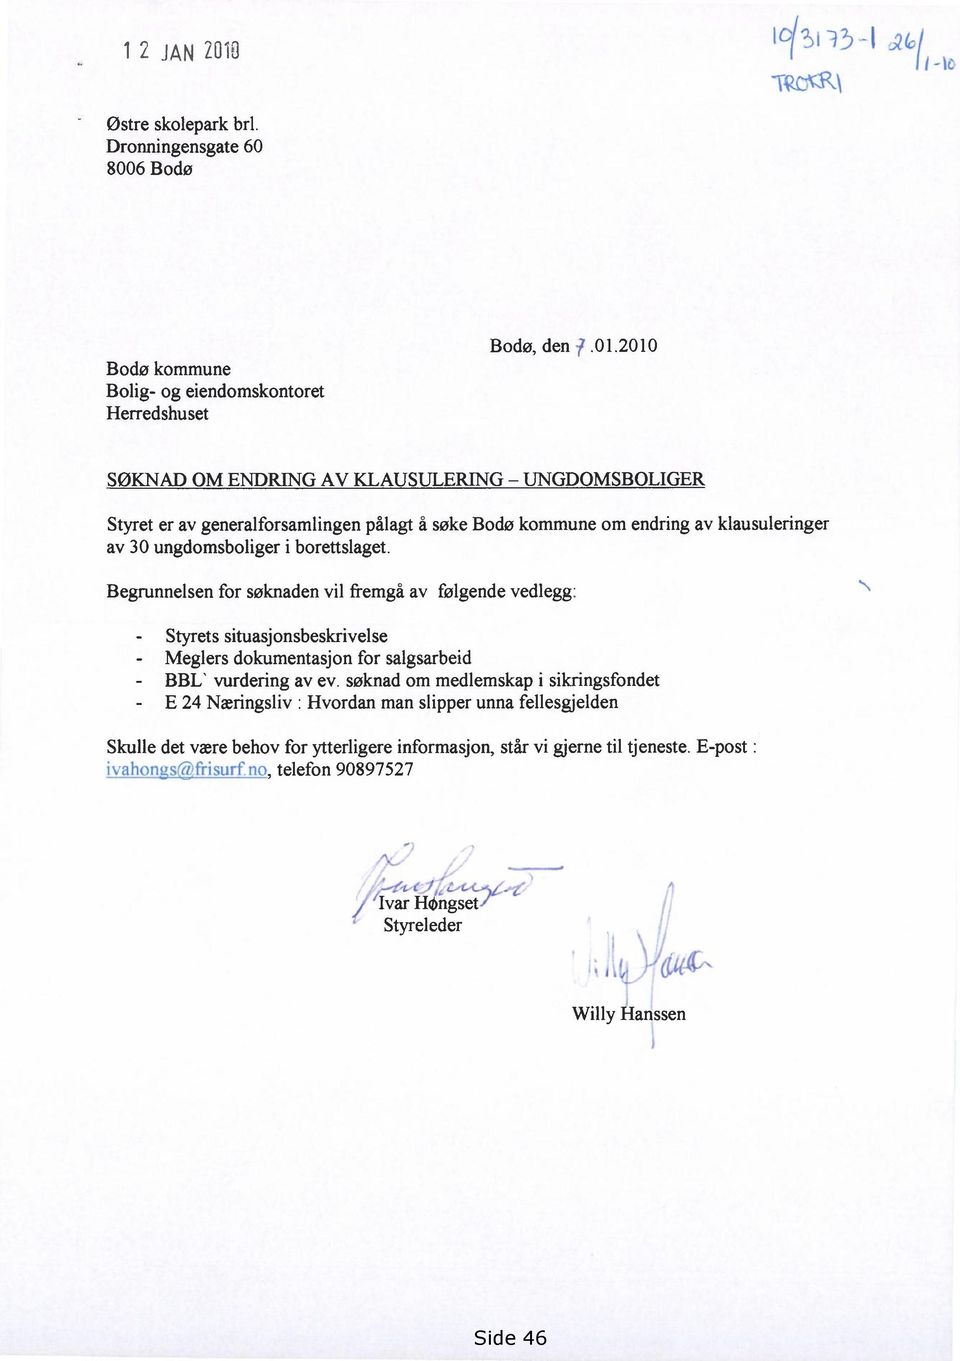 2010 SØKNAD OM ENDRING AV KLAUSULERING UNGDOMSBOLIGER Styret er av generalforsamlingen pålagt å søke Bodø kommune om endring av klausuleringer av 30 ungdomsboliger i borettslaget.